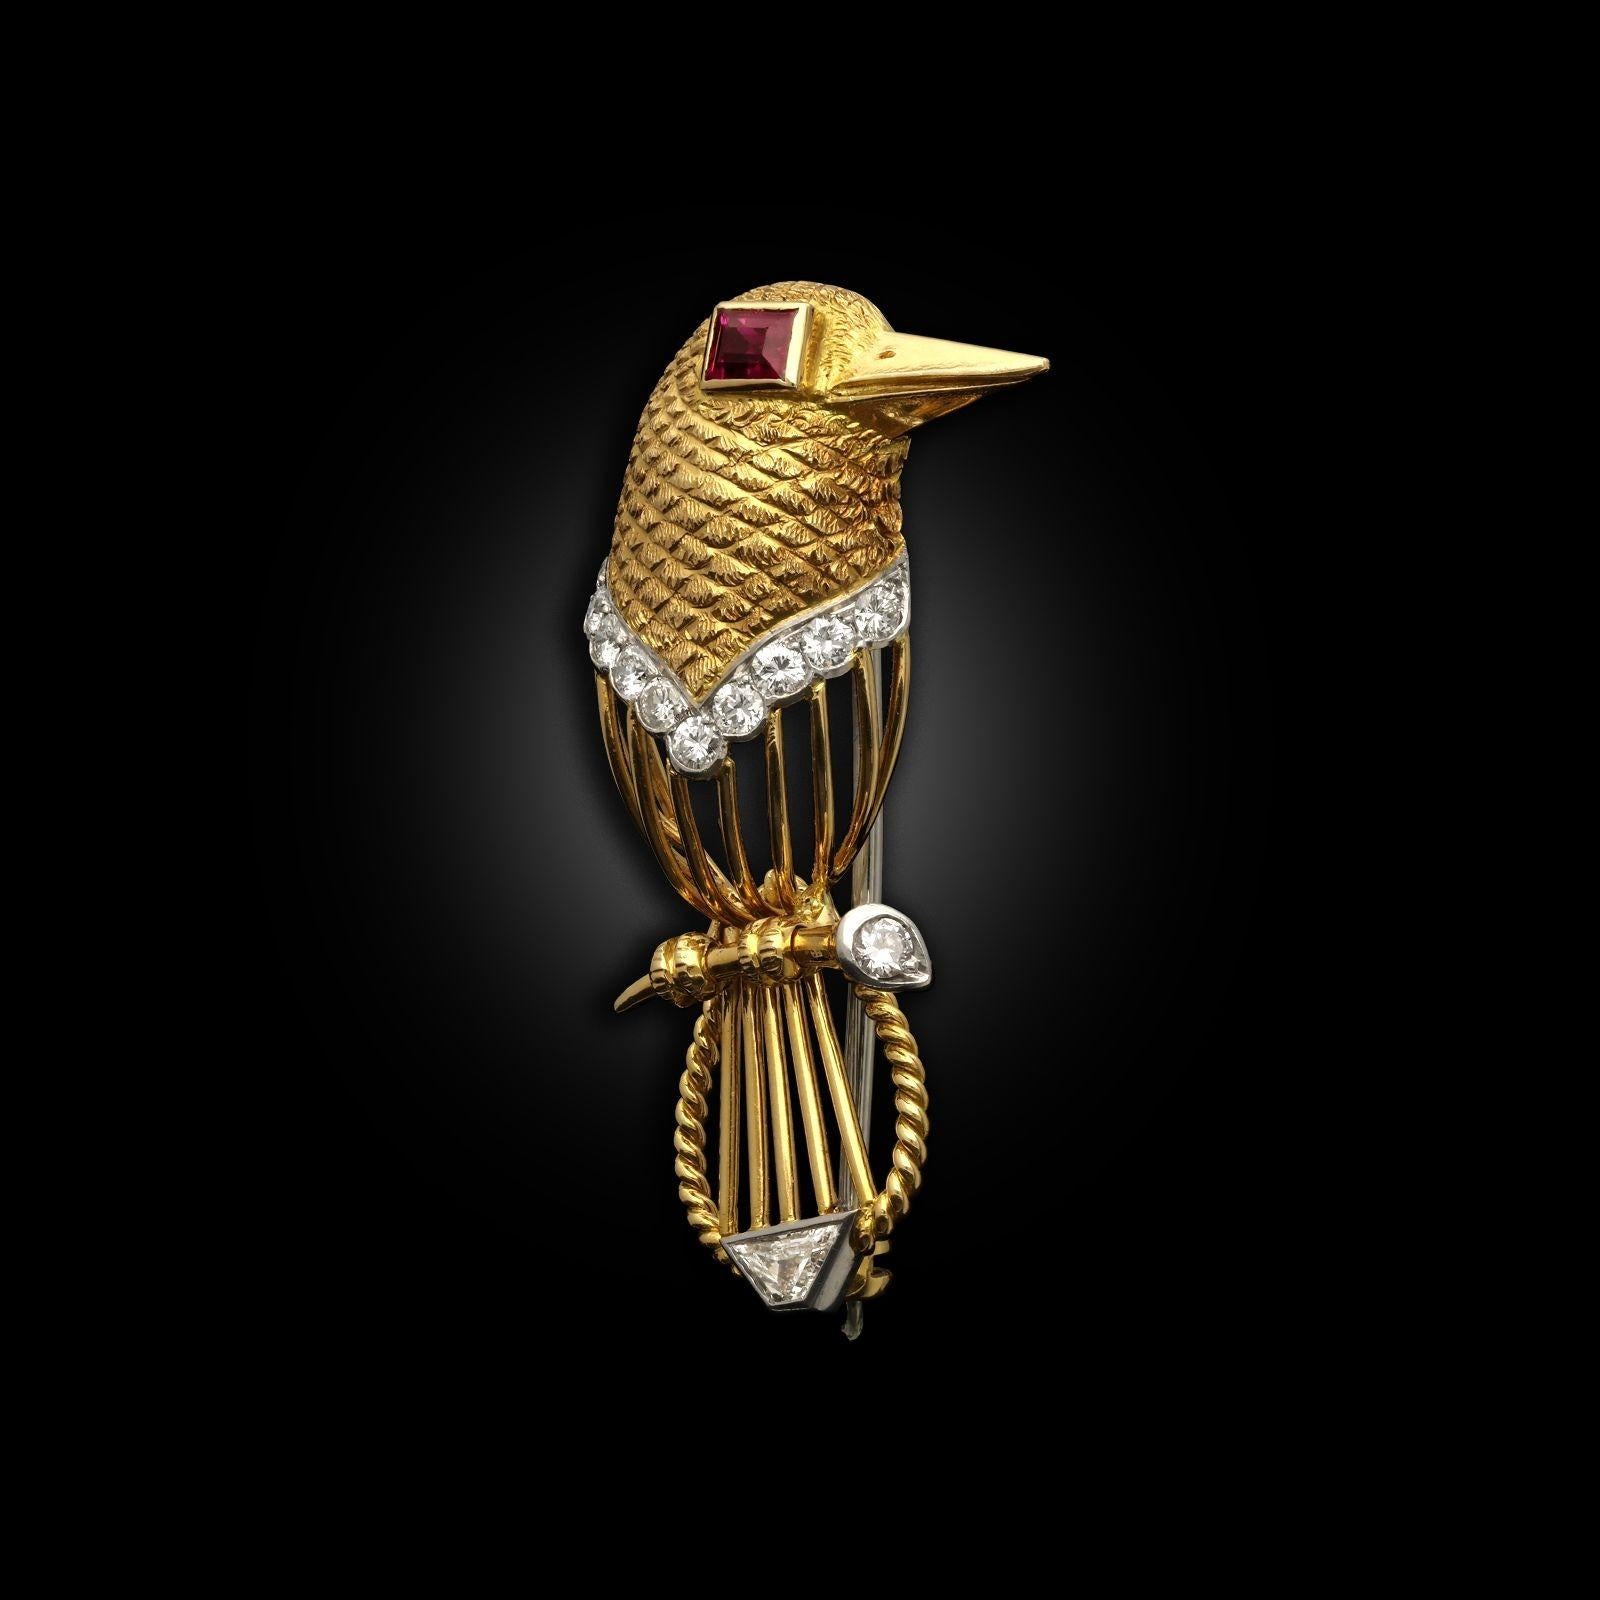 Broche vintage en forme d'oiseau stylisé de Cartier, vers les années 1960. L'oiseau est conçu en or jaune 18ct avec un motif de plumes texturé sur la tête, un corps en fil d'or ouvert avec une torsion de corde sur la queue. L'oiseau est orné de